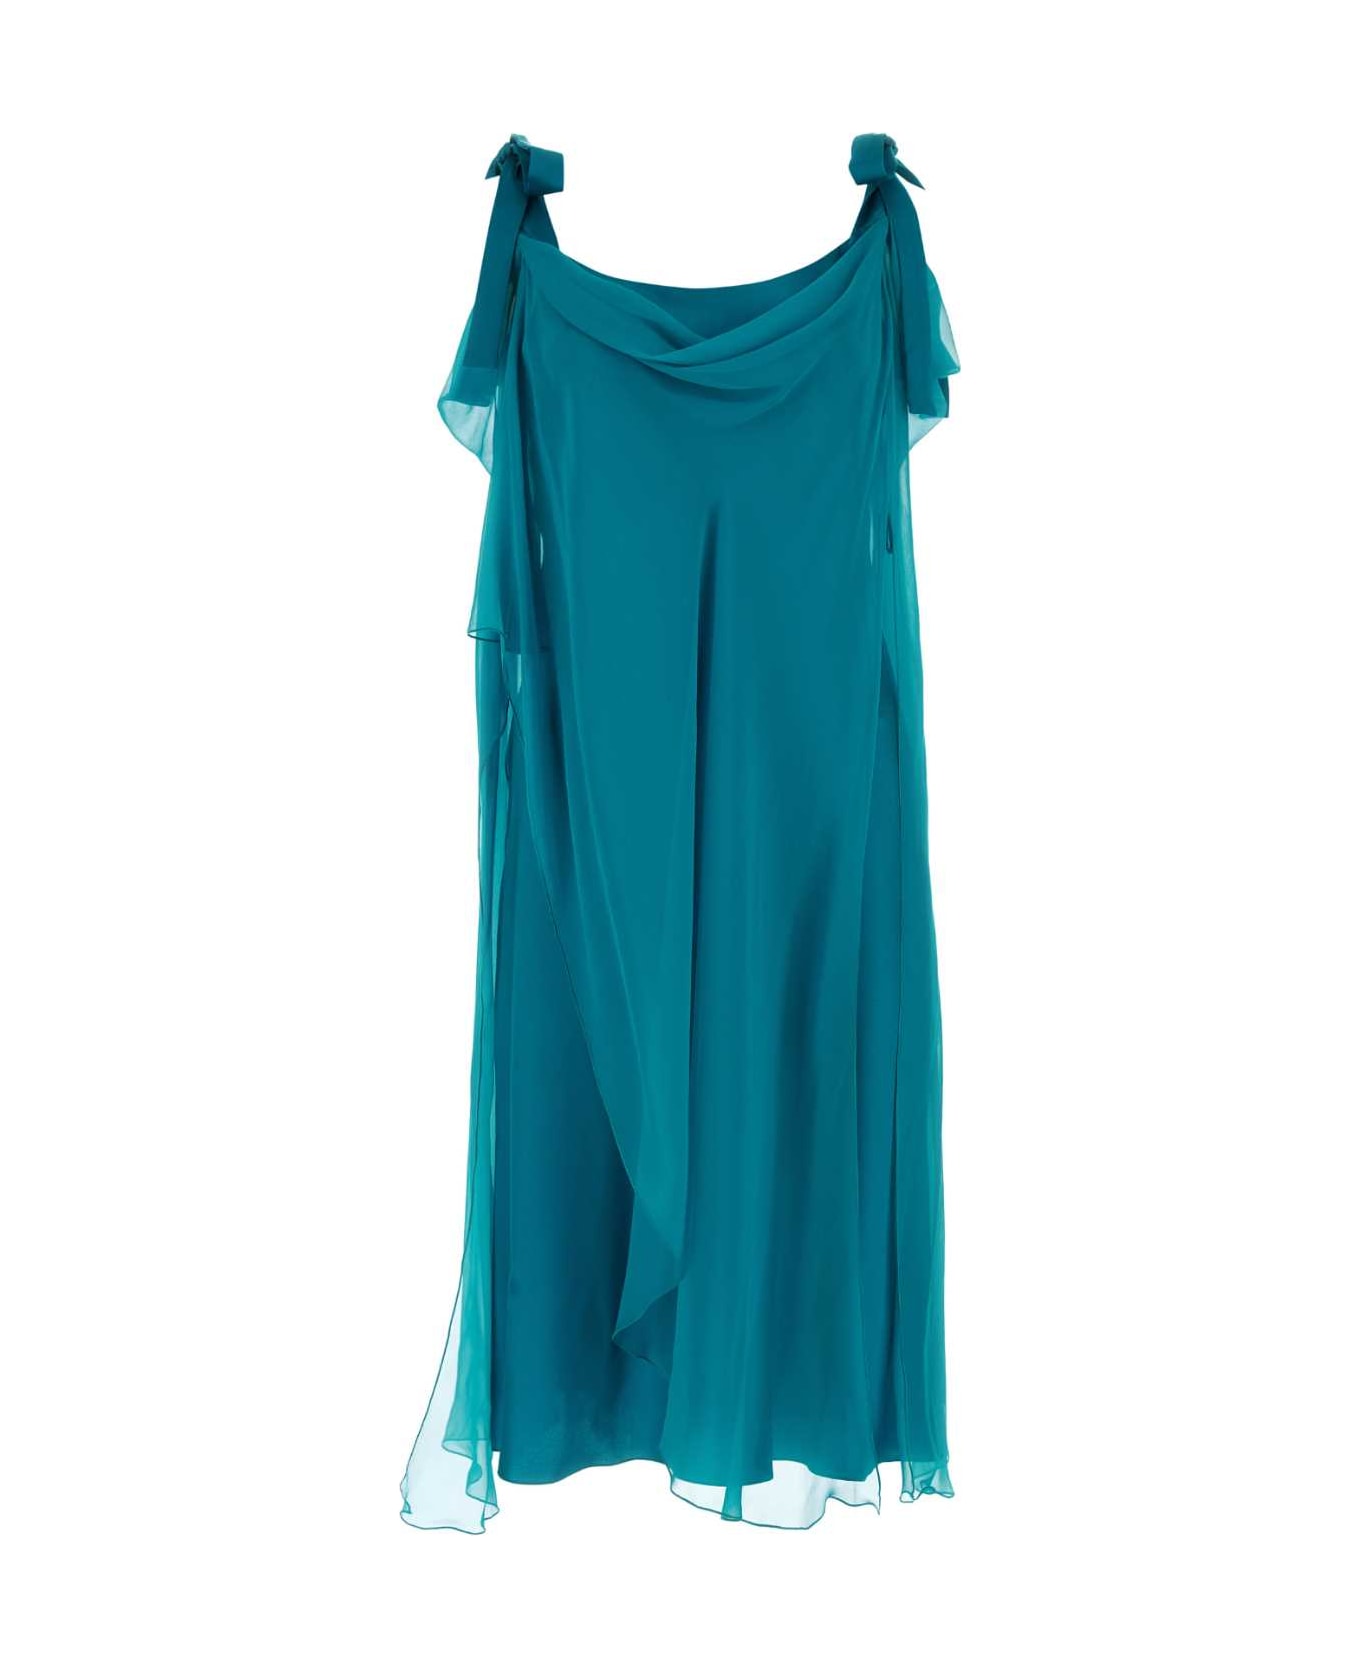 Alberta Ferretti Teal Green Silk Dress - VERDE